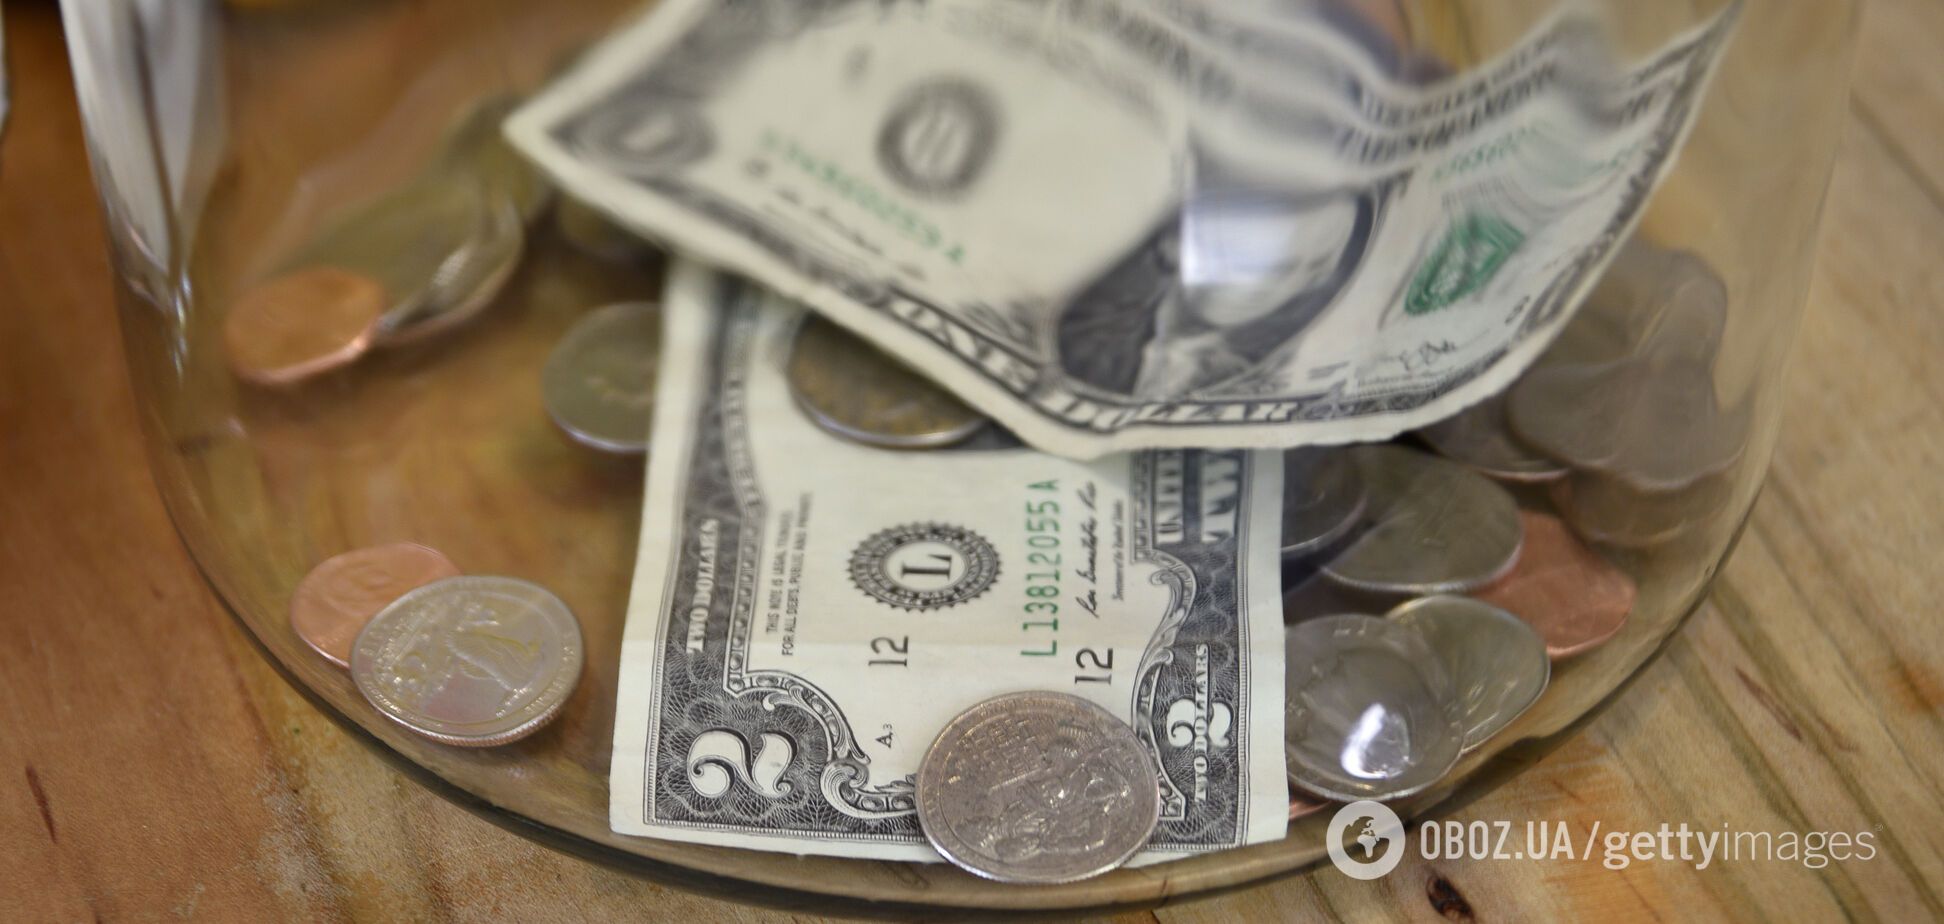 Доллар развернулся на 180 градусов и установился на новой отметке: курс валют на 9 апреля в Украине